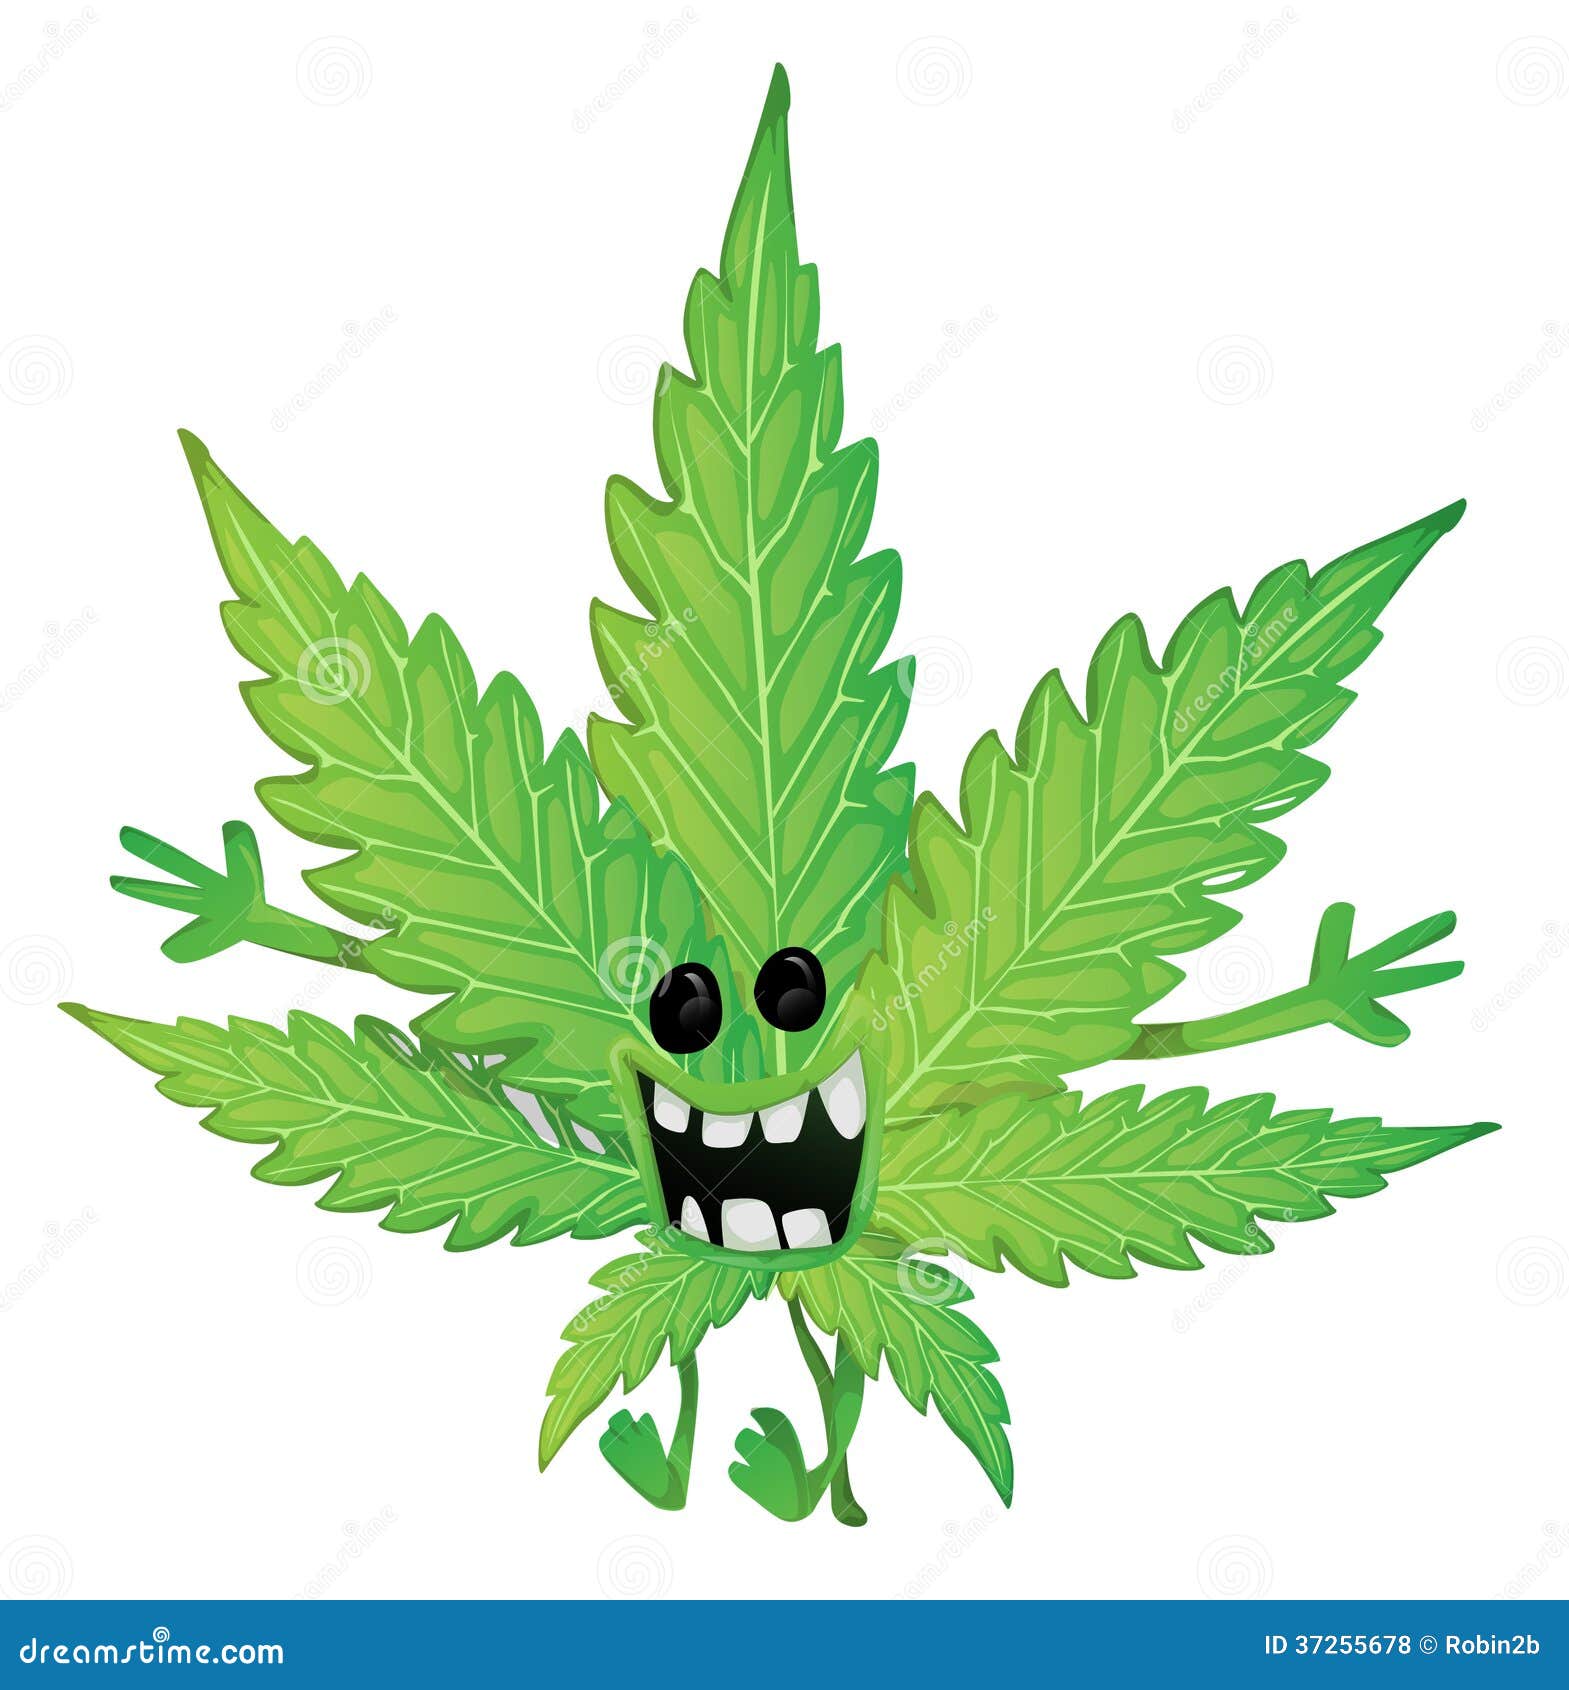 Картинки смешные с марихуаной tor browser и детское порно hydra2web